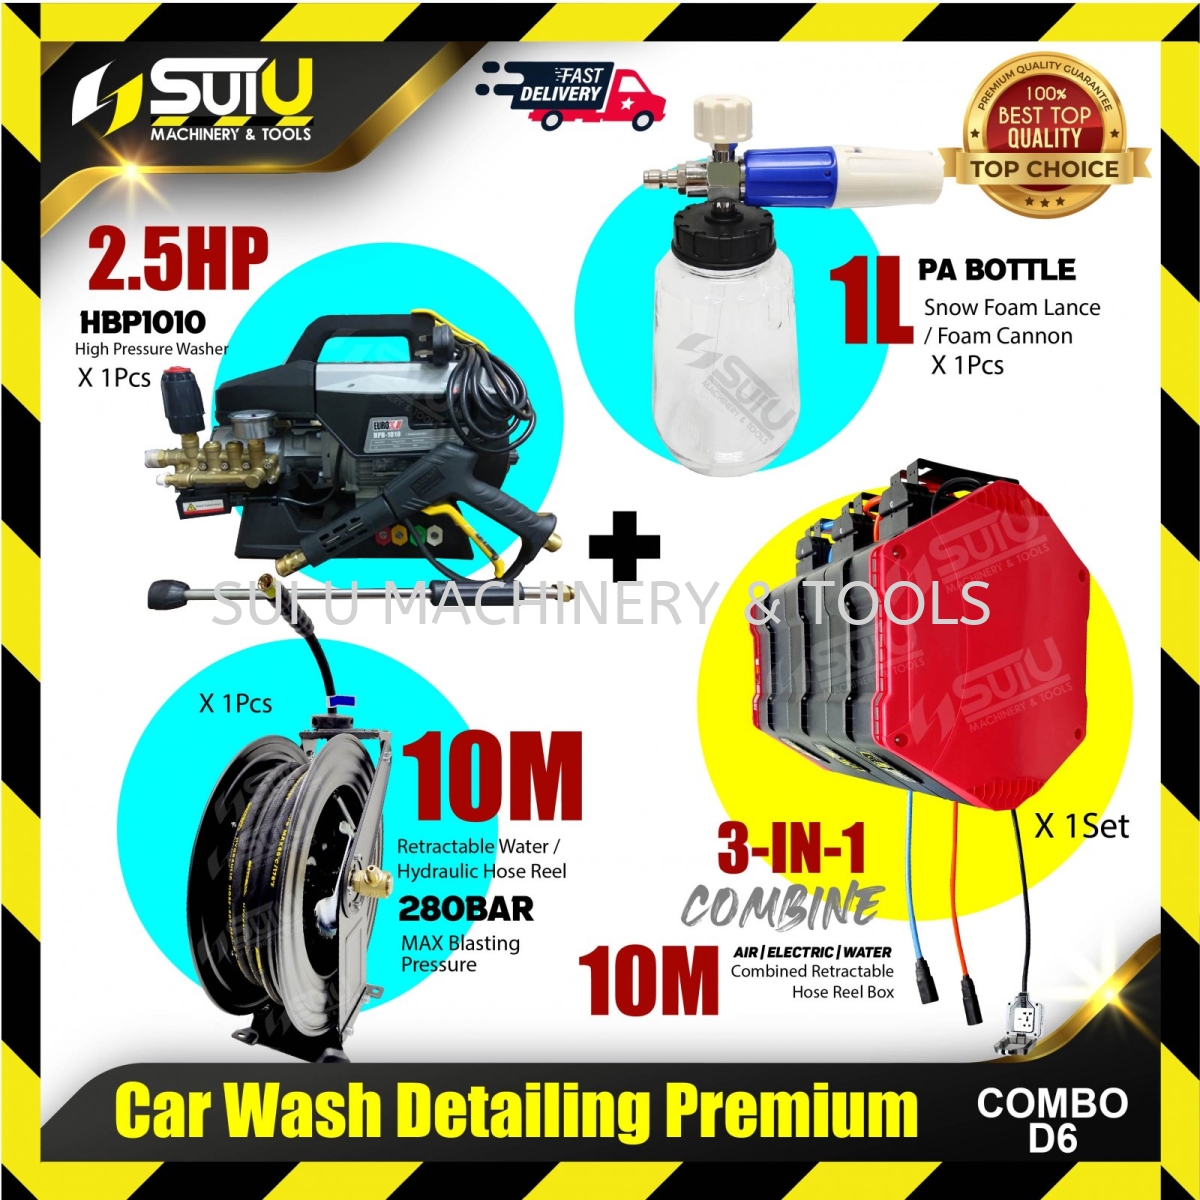 COMBO D6] Car Wash Detailing Premium Combo (HBP1010 + 1L Foam Cannon + 10M  Retractable Hose